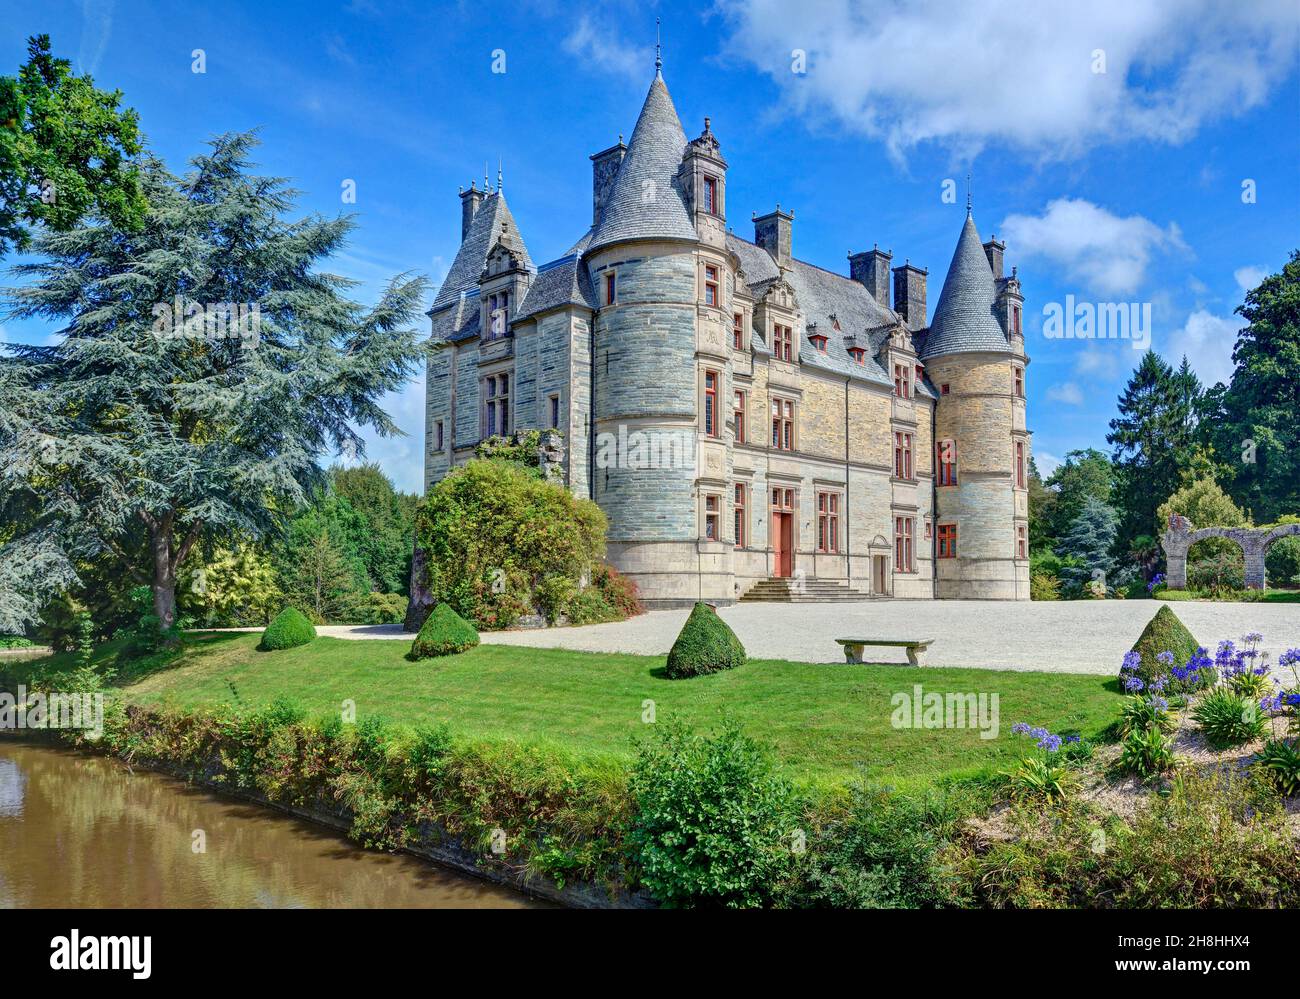 France, Manche, Cherbourg-en-Cotentin, château de Ravalet Banque D'Images